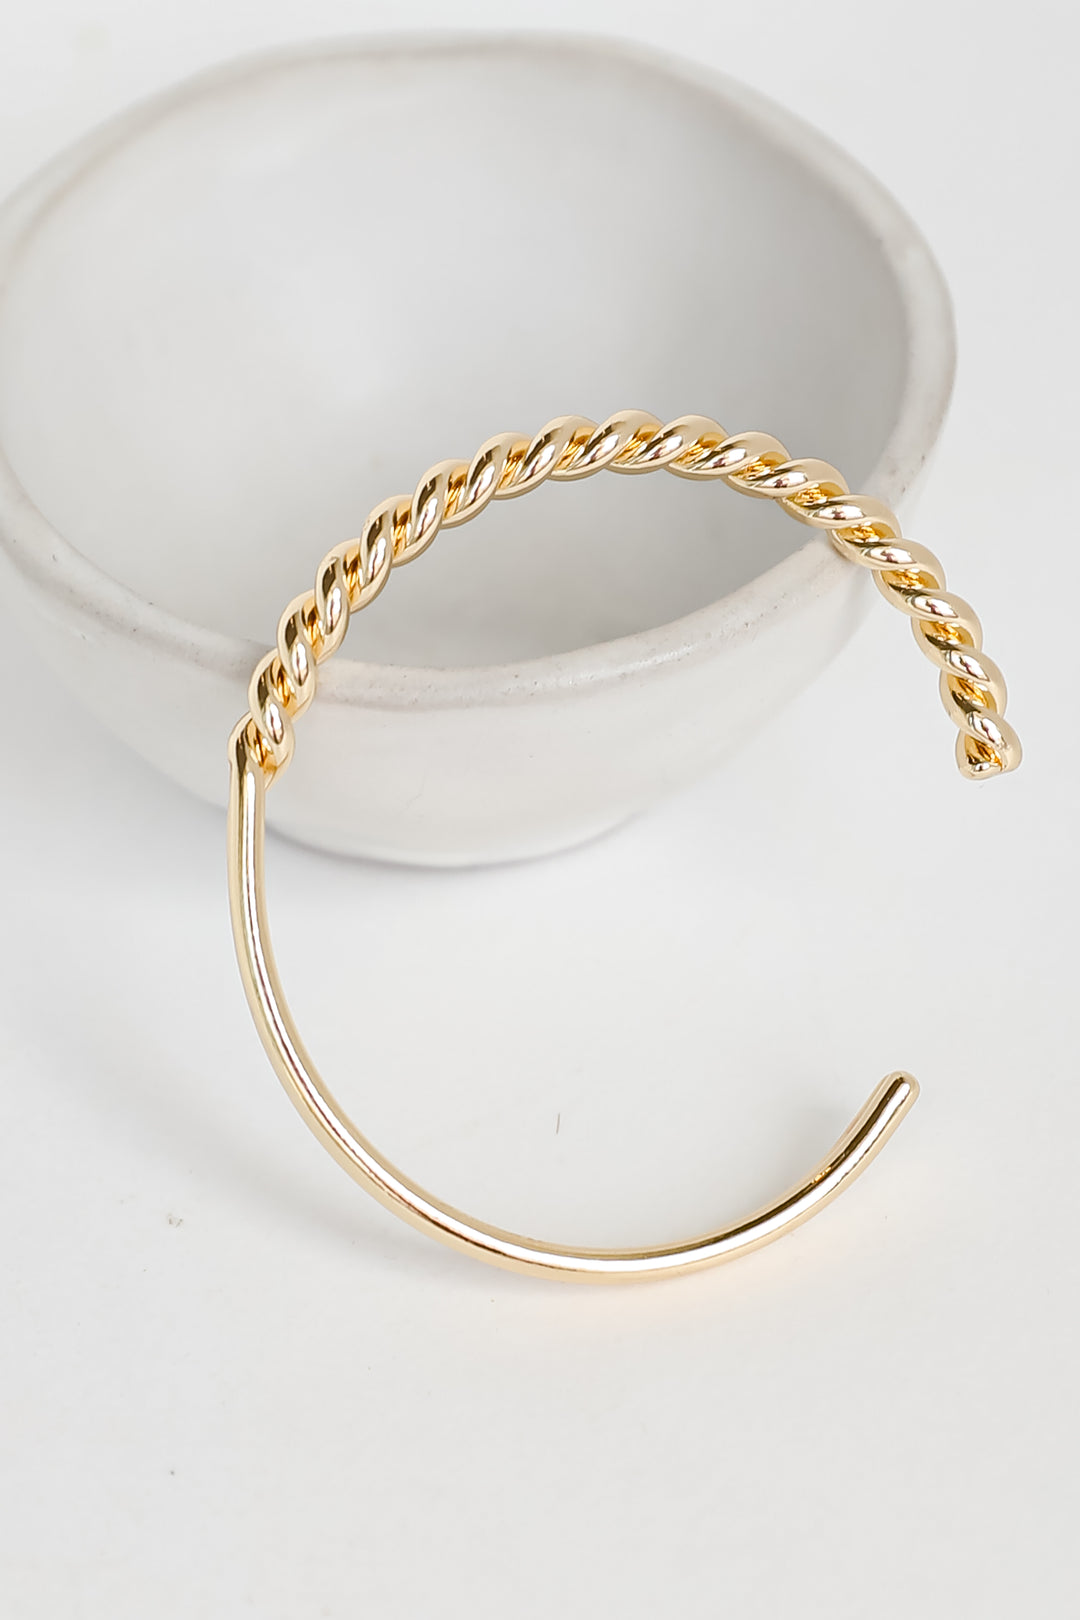 Missy Gold Twisted Cuff Bracelet dainty jewelry